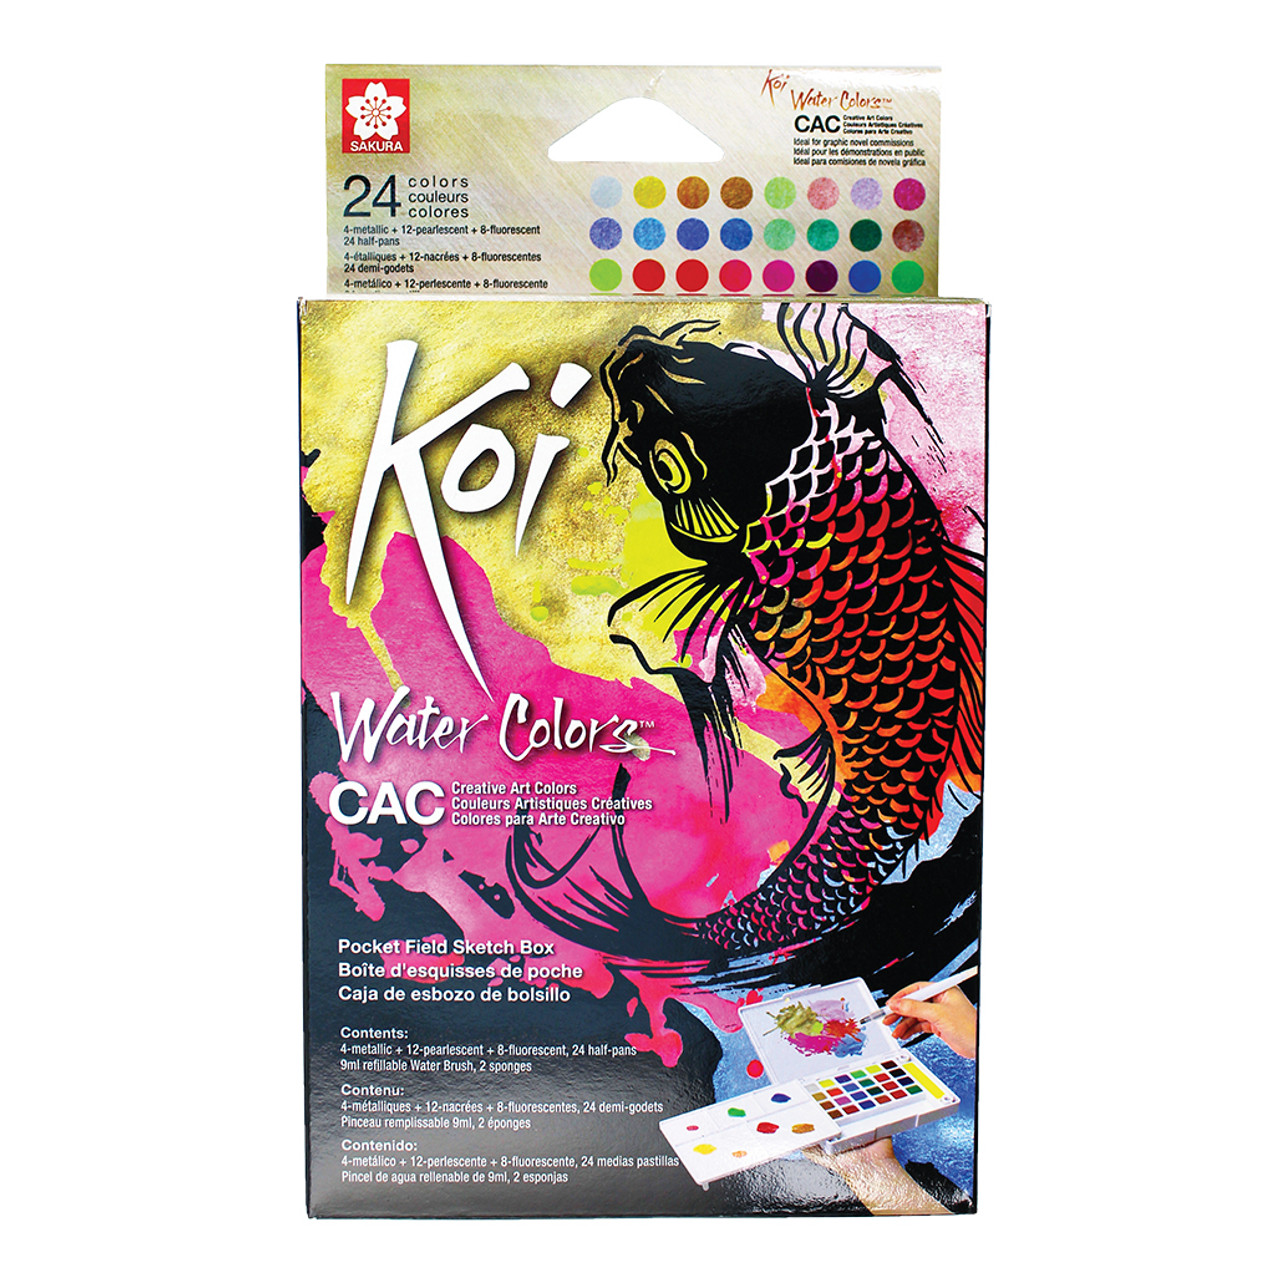 Koi Creative Art Colors Watercolor Sets